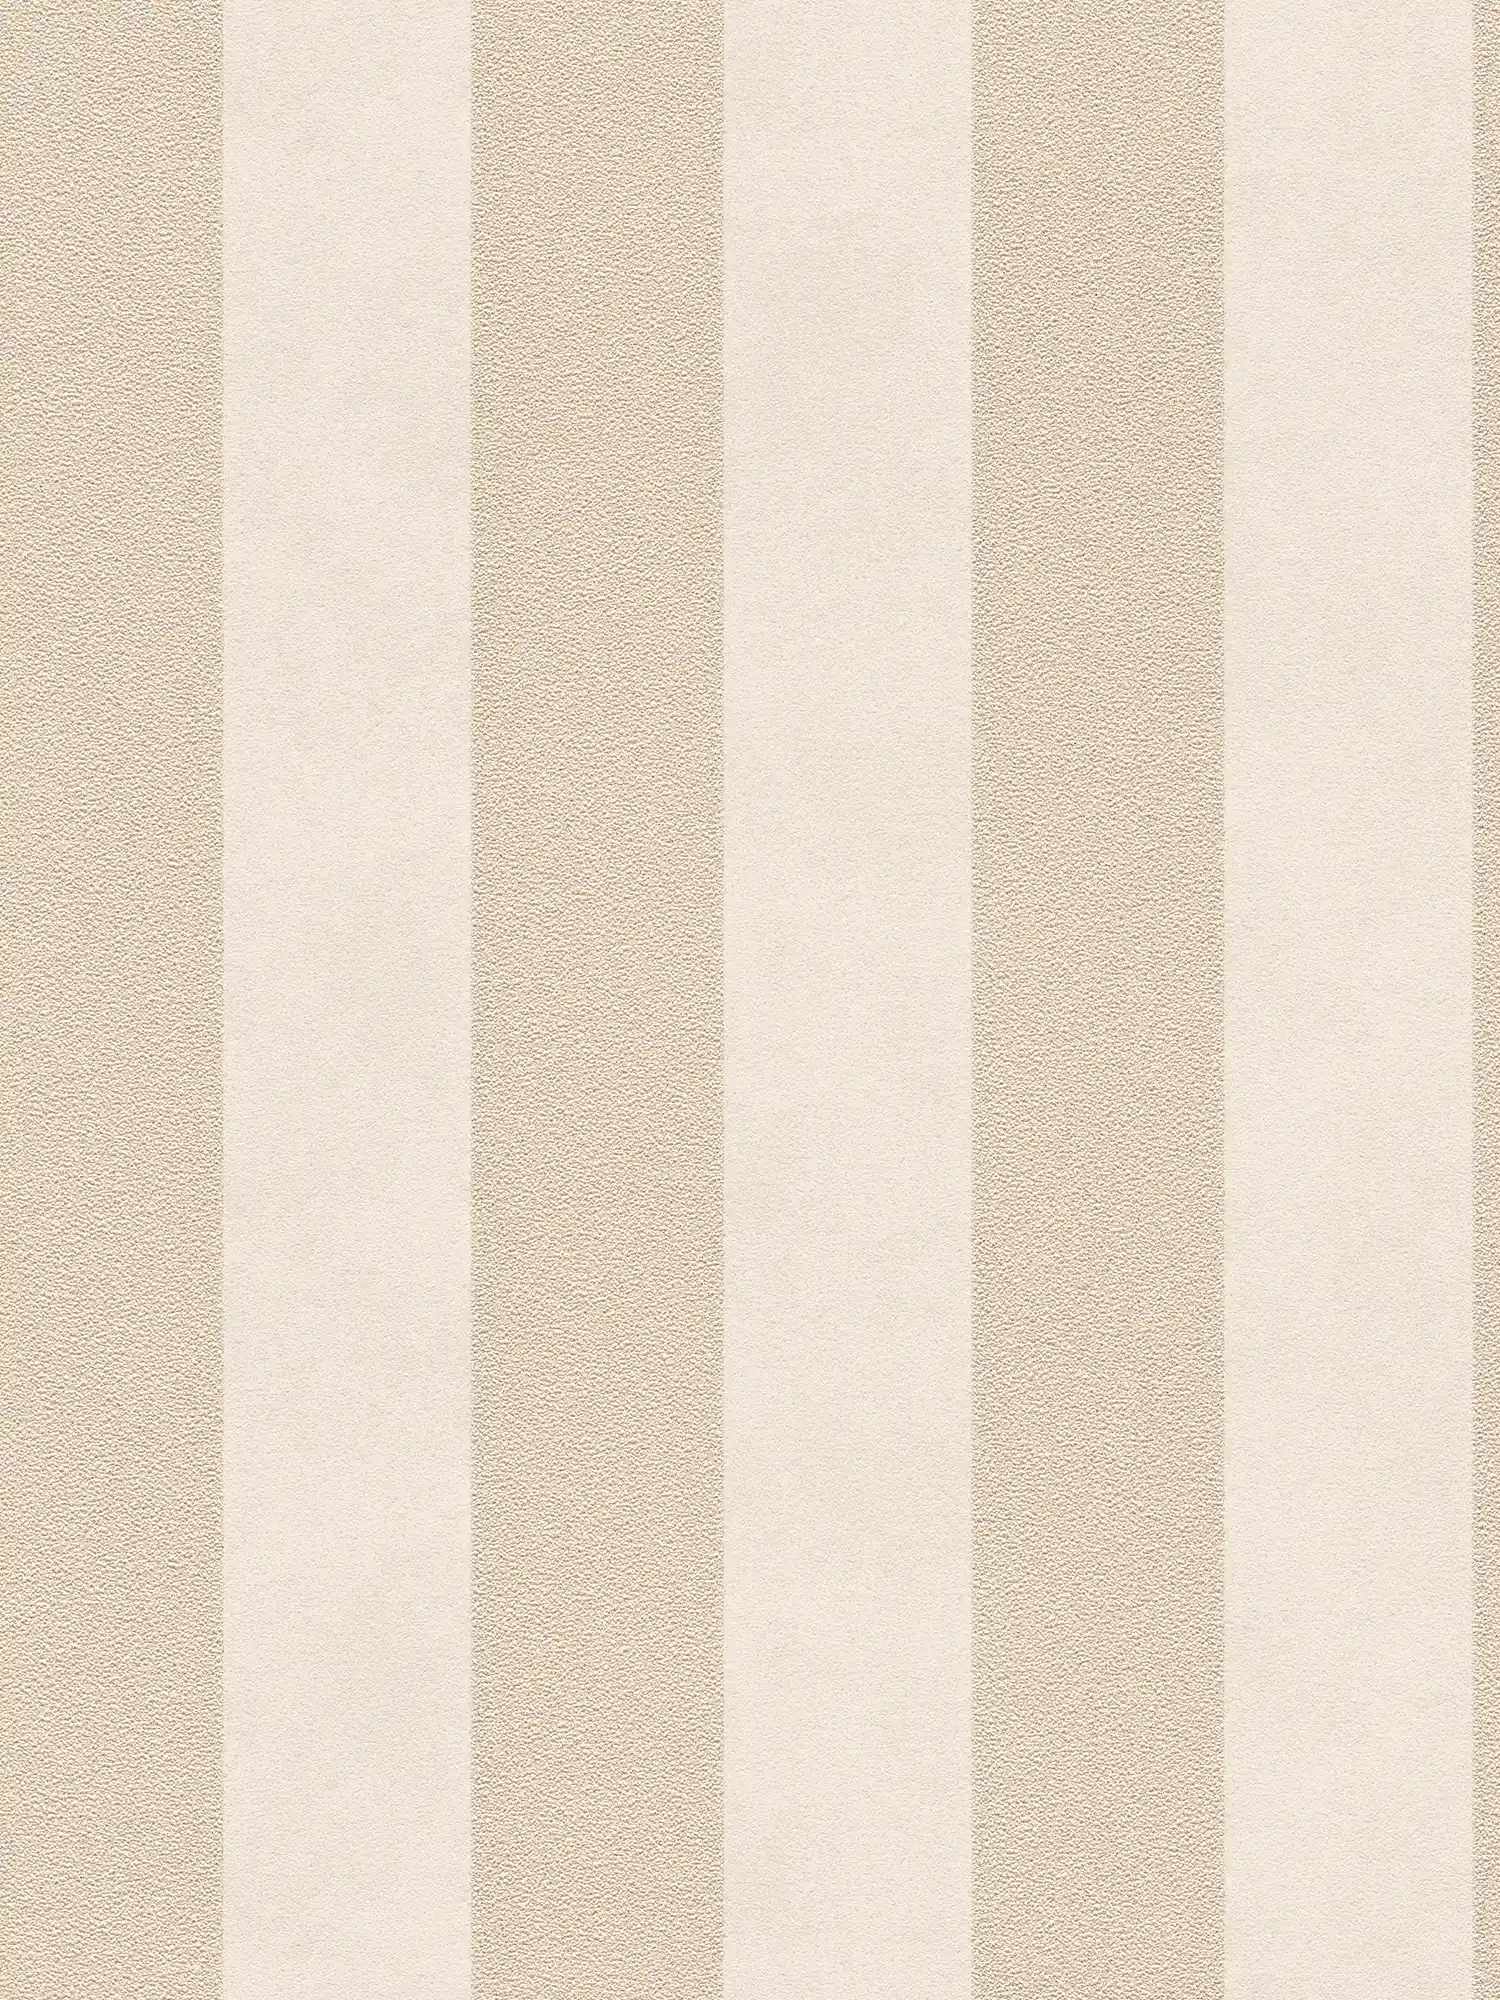         Blockstreifen-Tapete mit Farb- und Strukturmuster – Beige, Gold, Creme
    